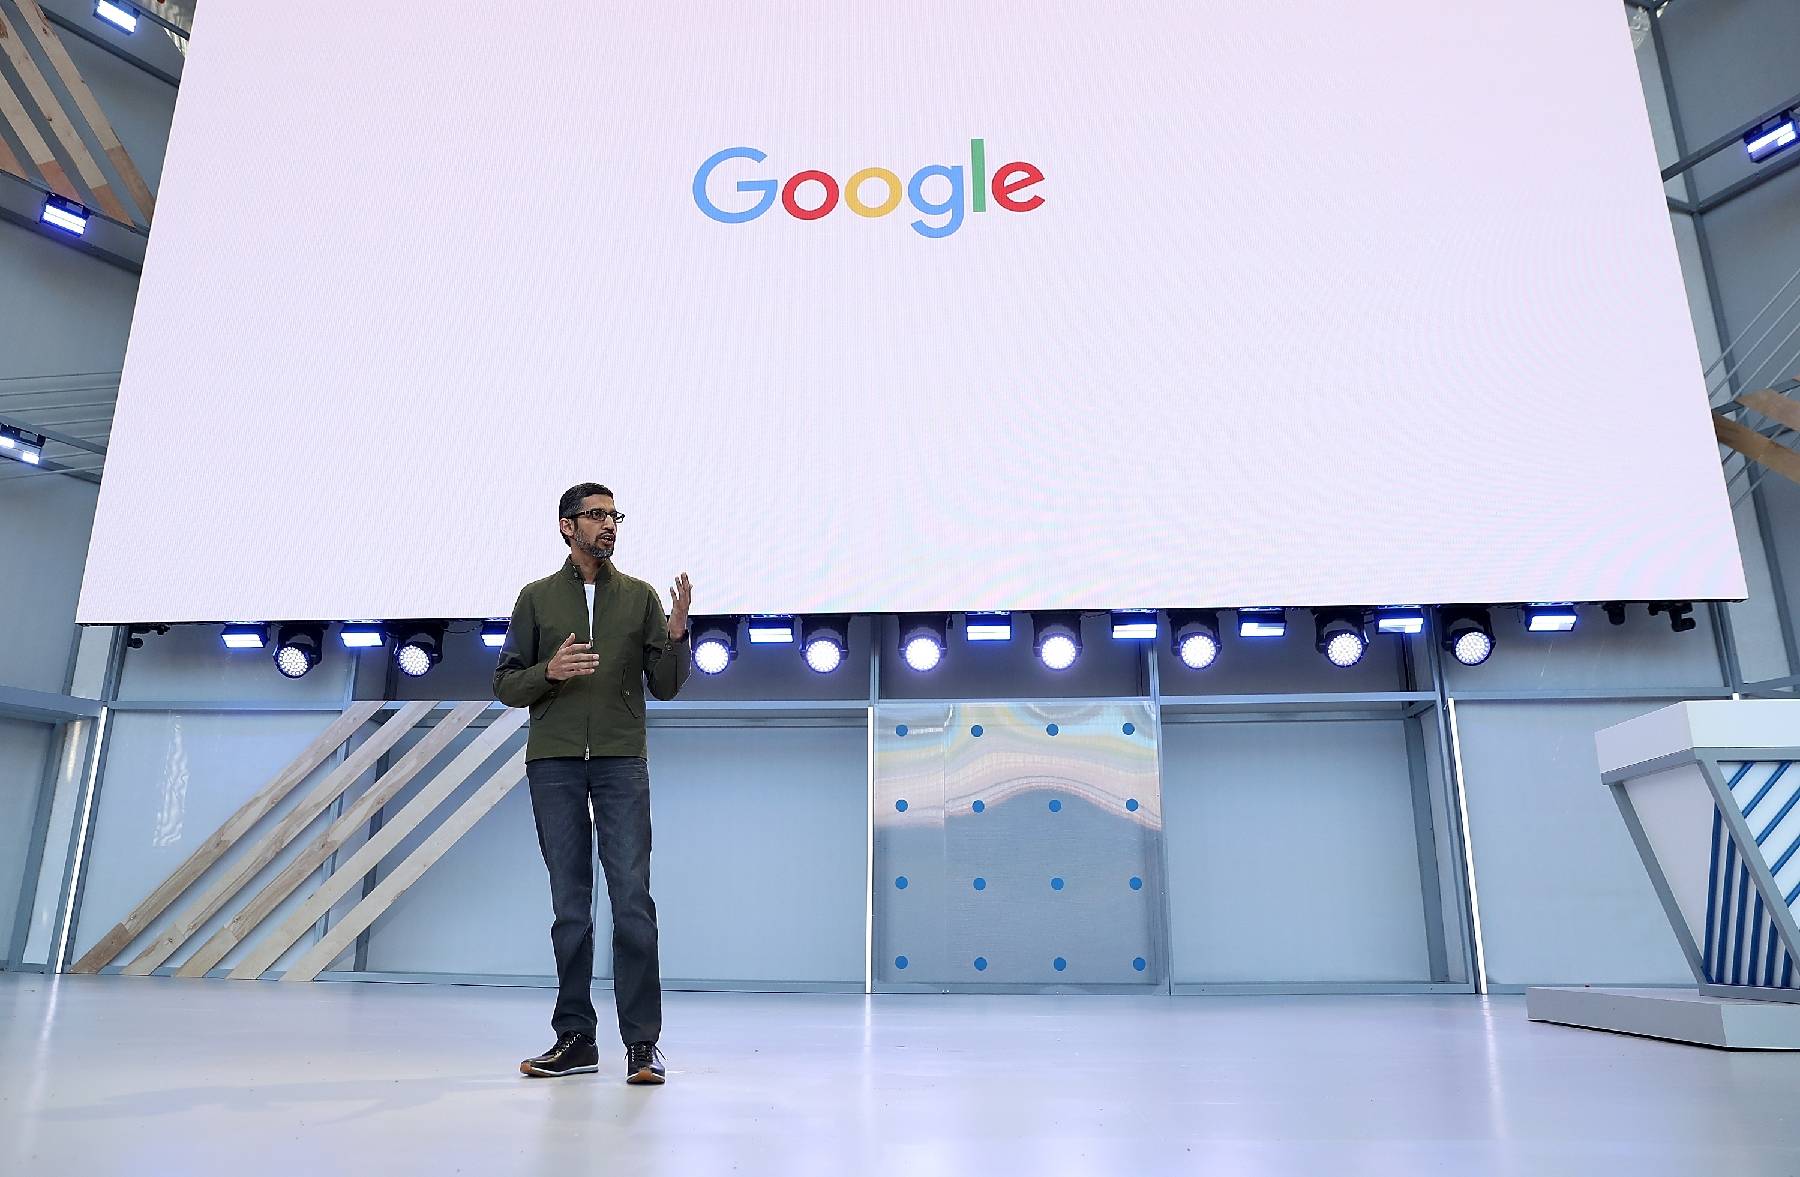 La maison mère de Google supprime 12.000 postes, suivant le mouvement des géants de la tech